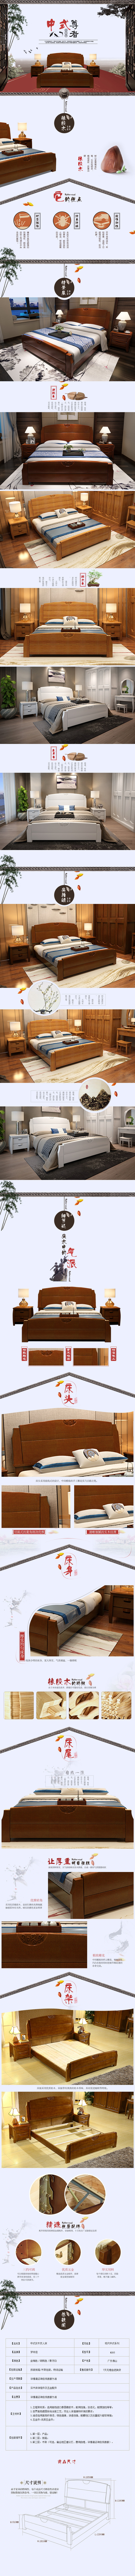 淘宝美工小五xw实木床简约 现代 创意设计 日式 视觉营销 清新中式家具作品